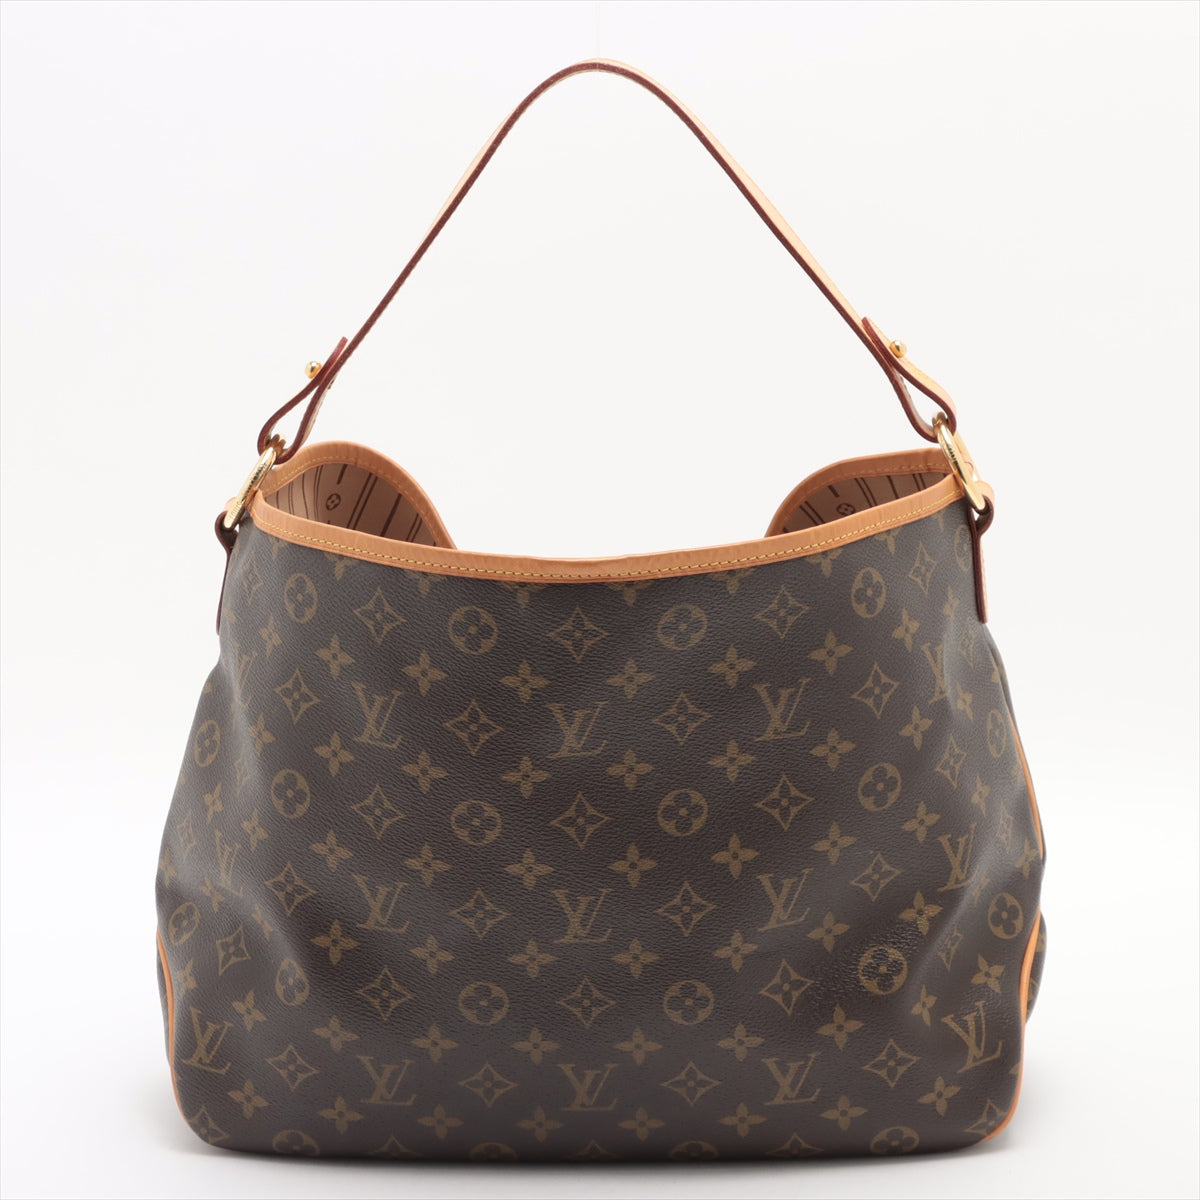 Louis Vuitton, Bags, Louis Vuitton Monogram Delightful Pm